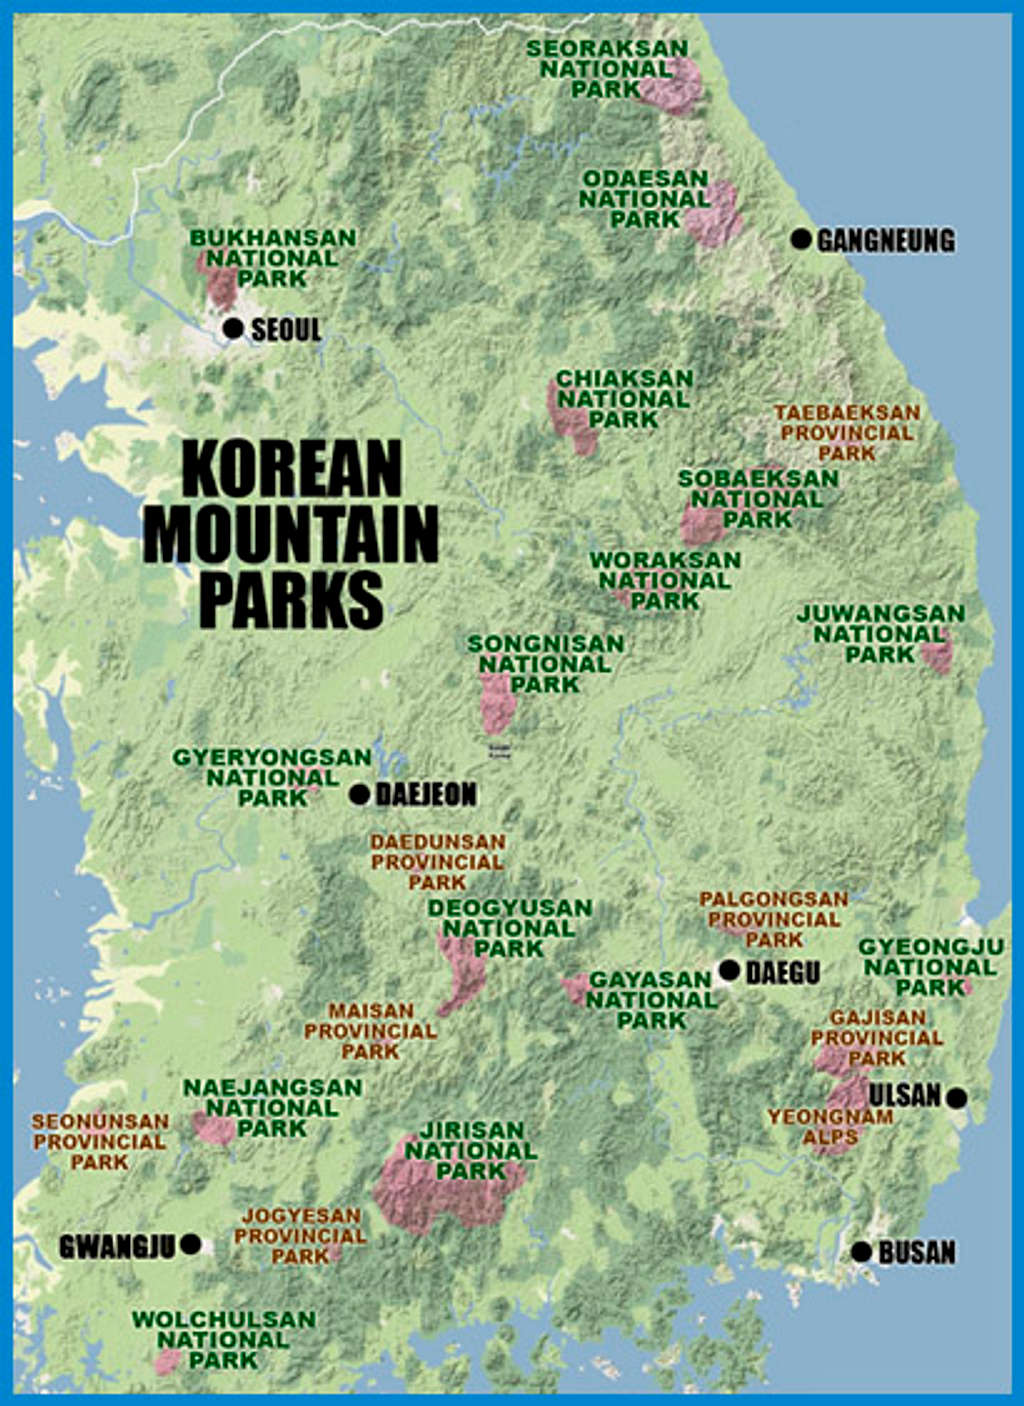 Korea Mountain Parks